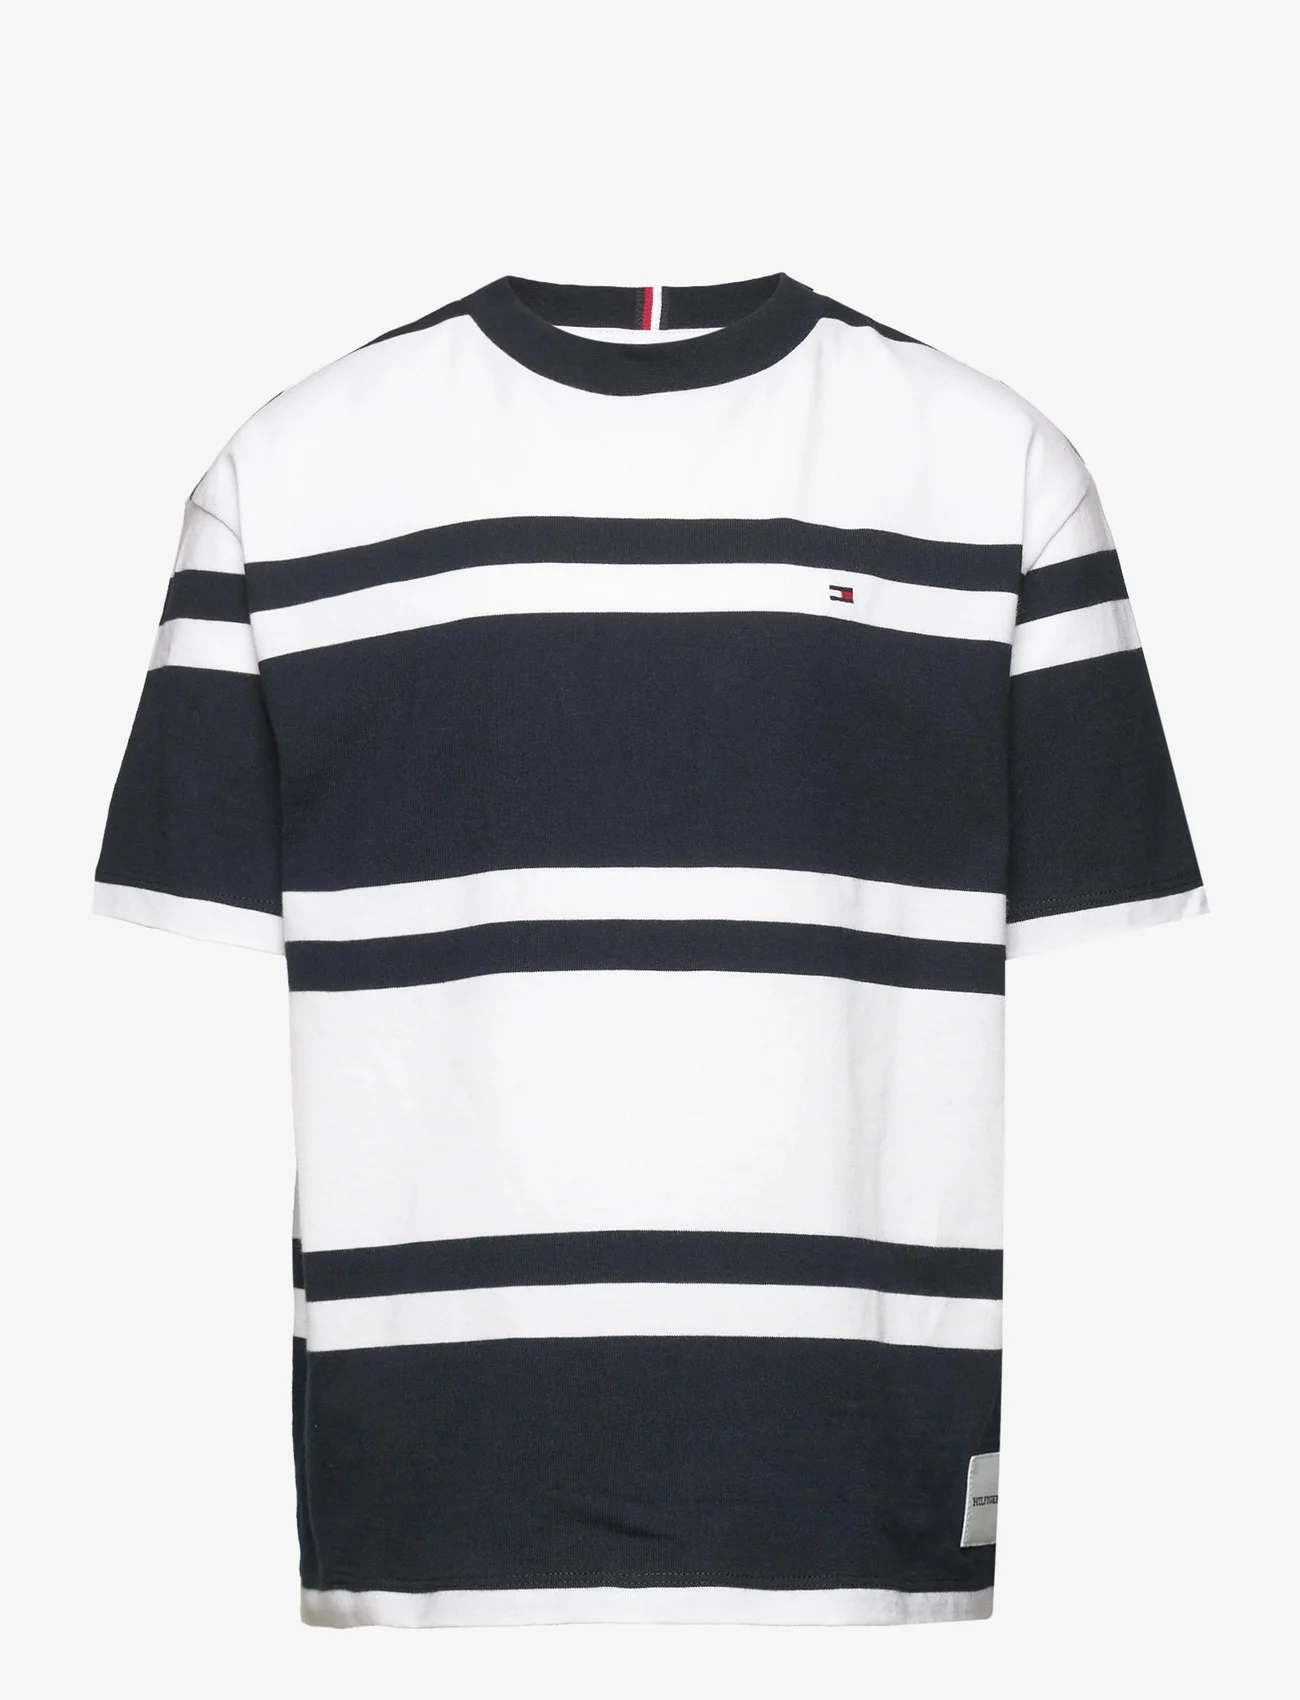 Tommy Hilfiger - RUGBY STRIPE TEE S/S - kortærmede t-shirts - white base/blue stripes - 0